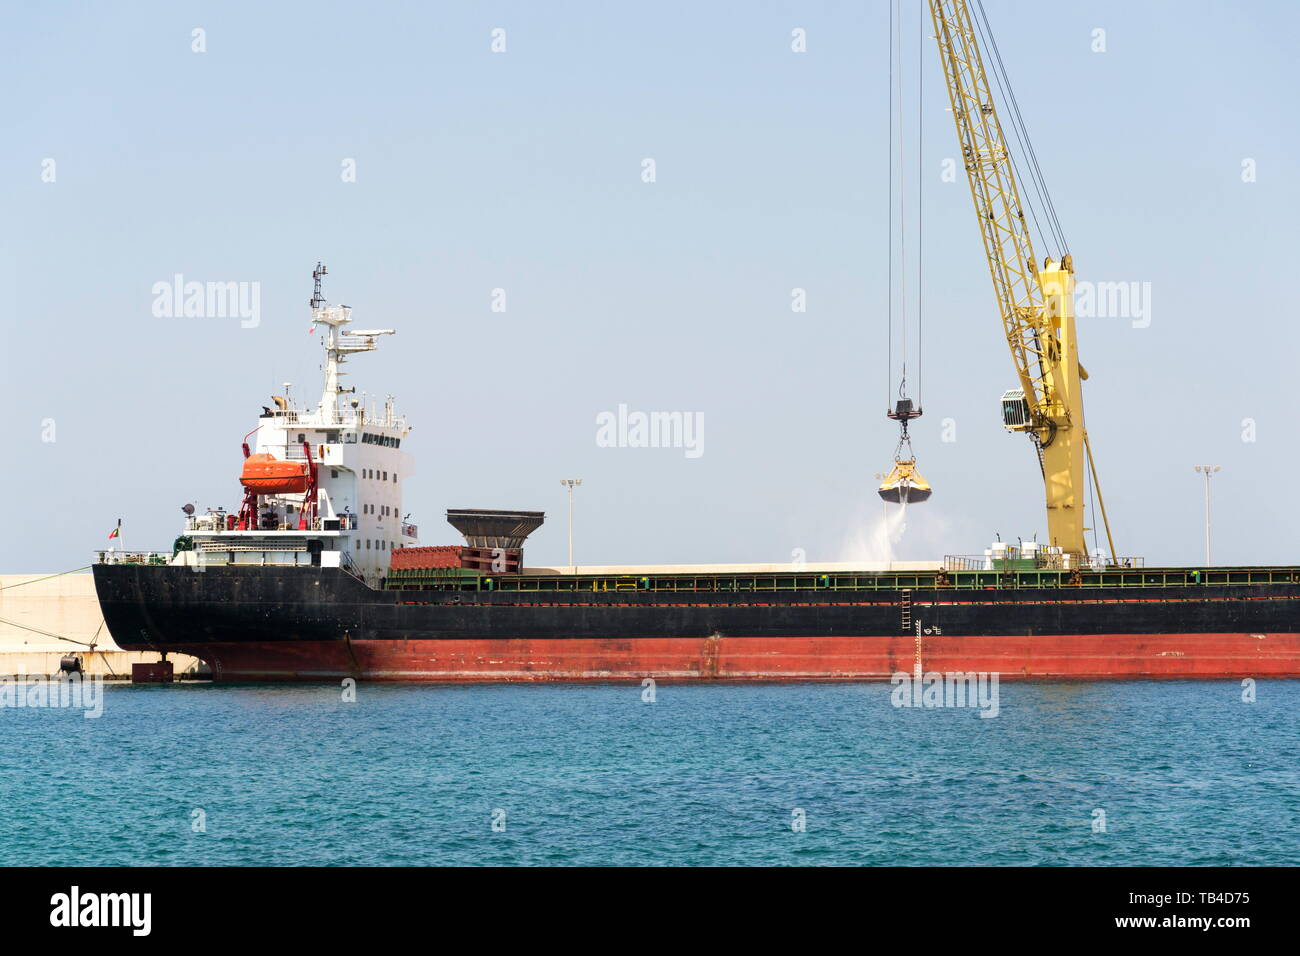 Grue de déchargement de sable jaune grand cargo cargo dans le port, le fret de la numérisation, de l'efficacité des transports, pénurie de sable ensoleillée, concept Banque D'Images